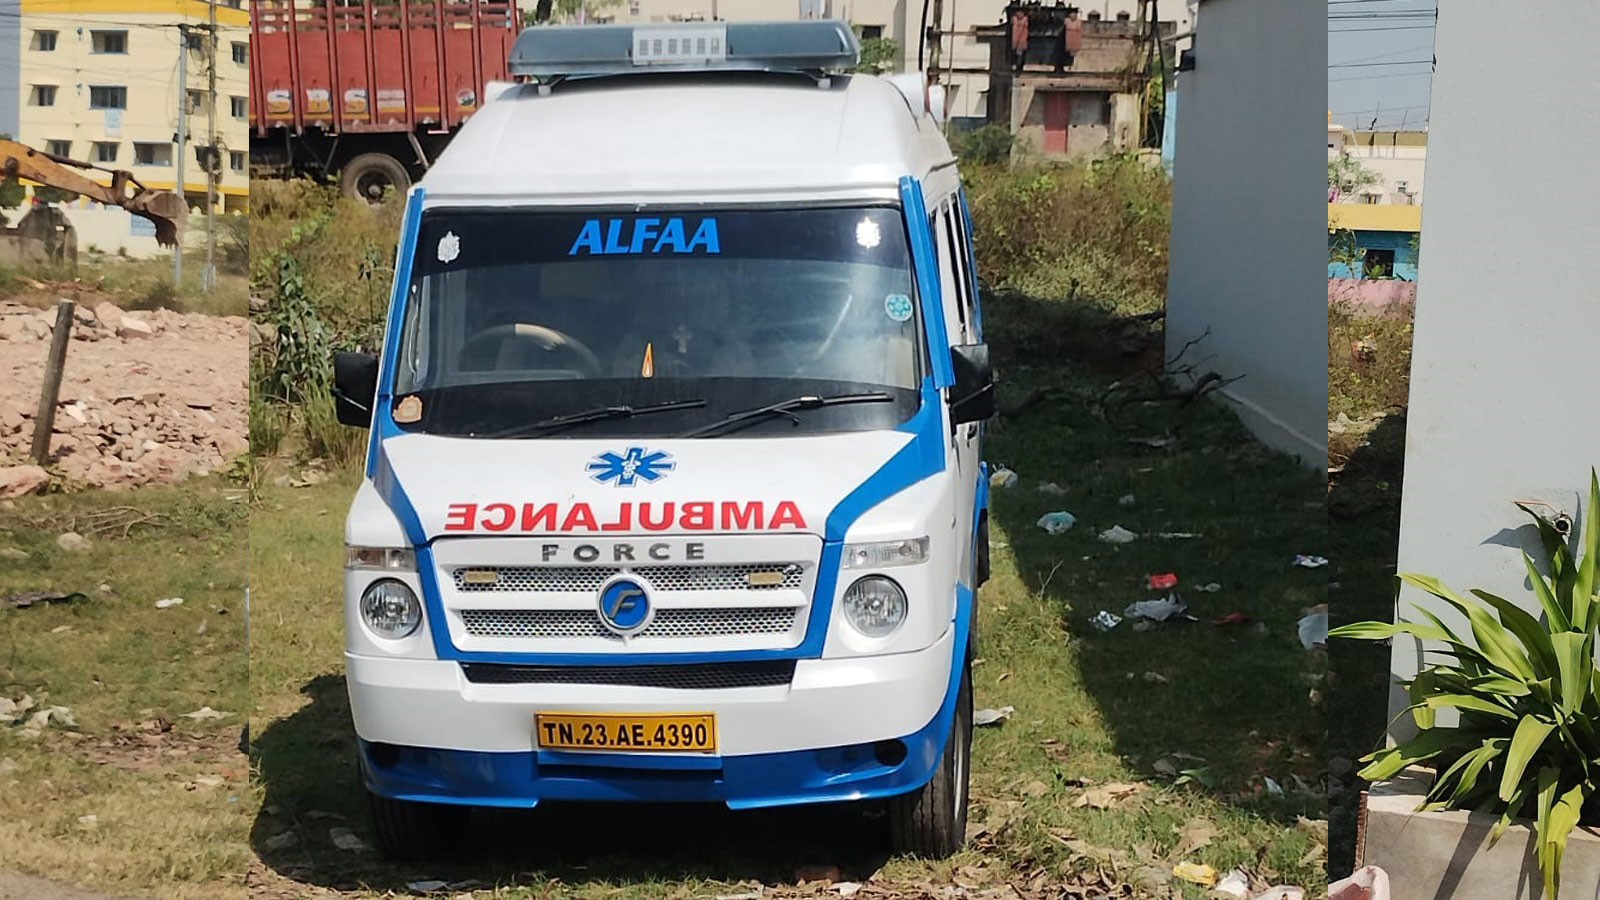 Ambulance Service Chennai